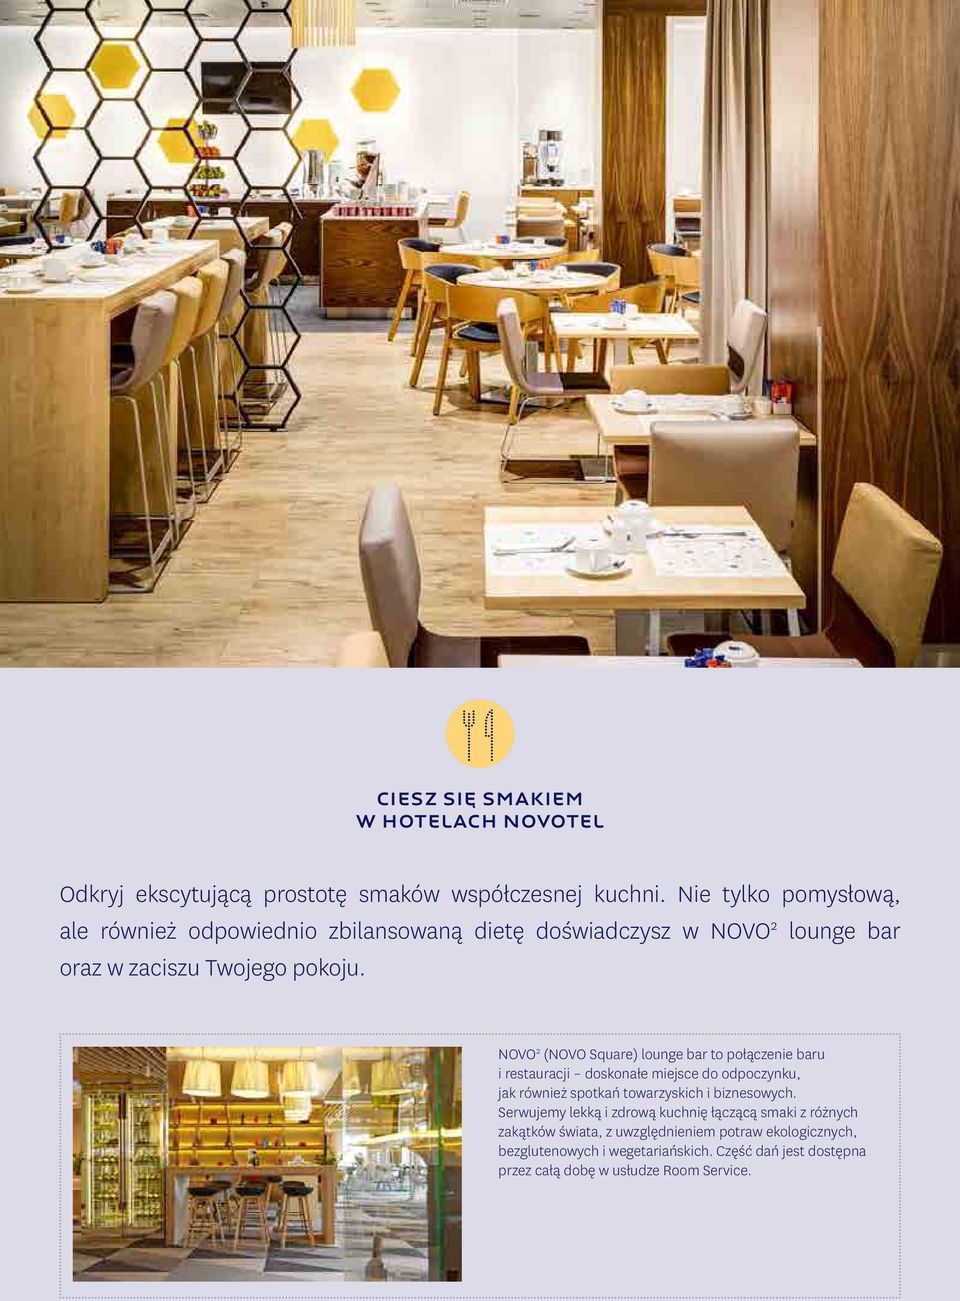 NOVO 2 (NOVO Square) lounge bar to połączenie baru i restauracji doskonałe miejsce do odpoczynku, jak również spotkań towarzyskich i biznesowych.